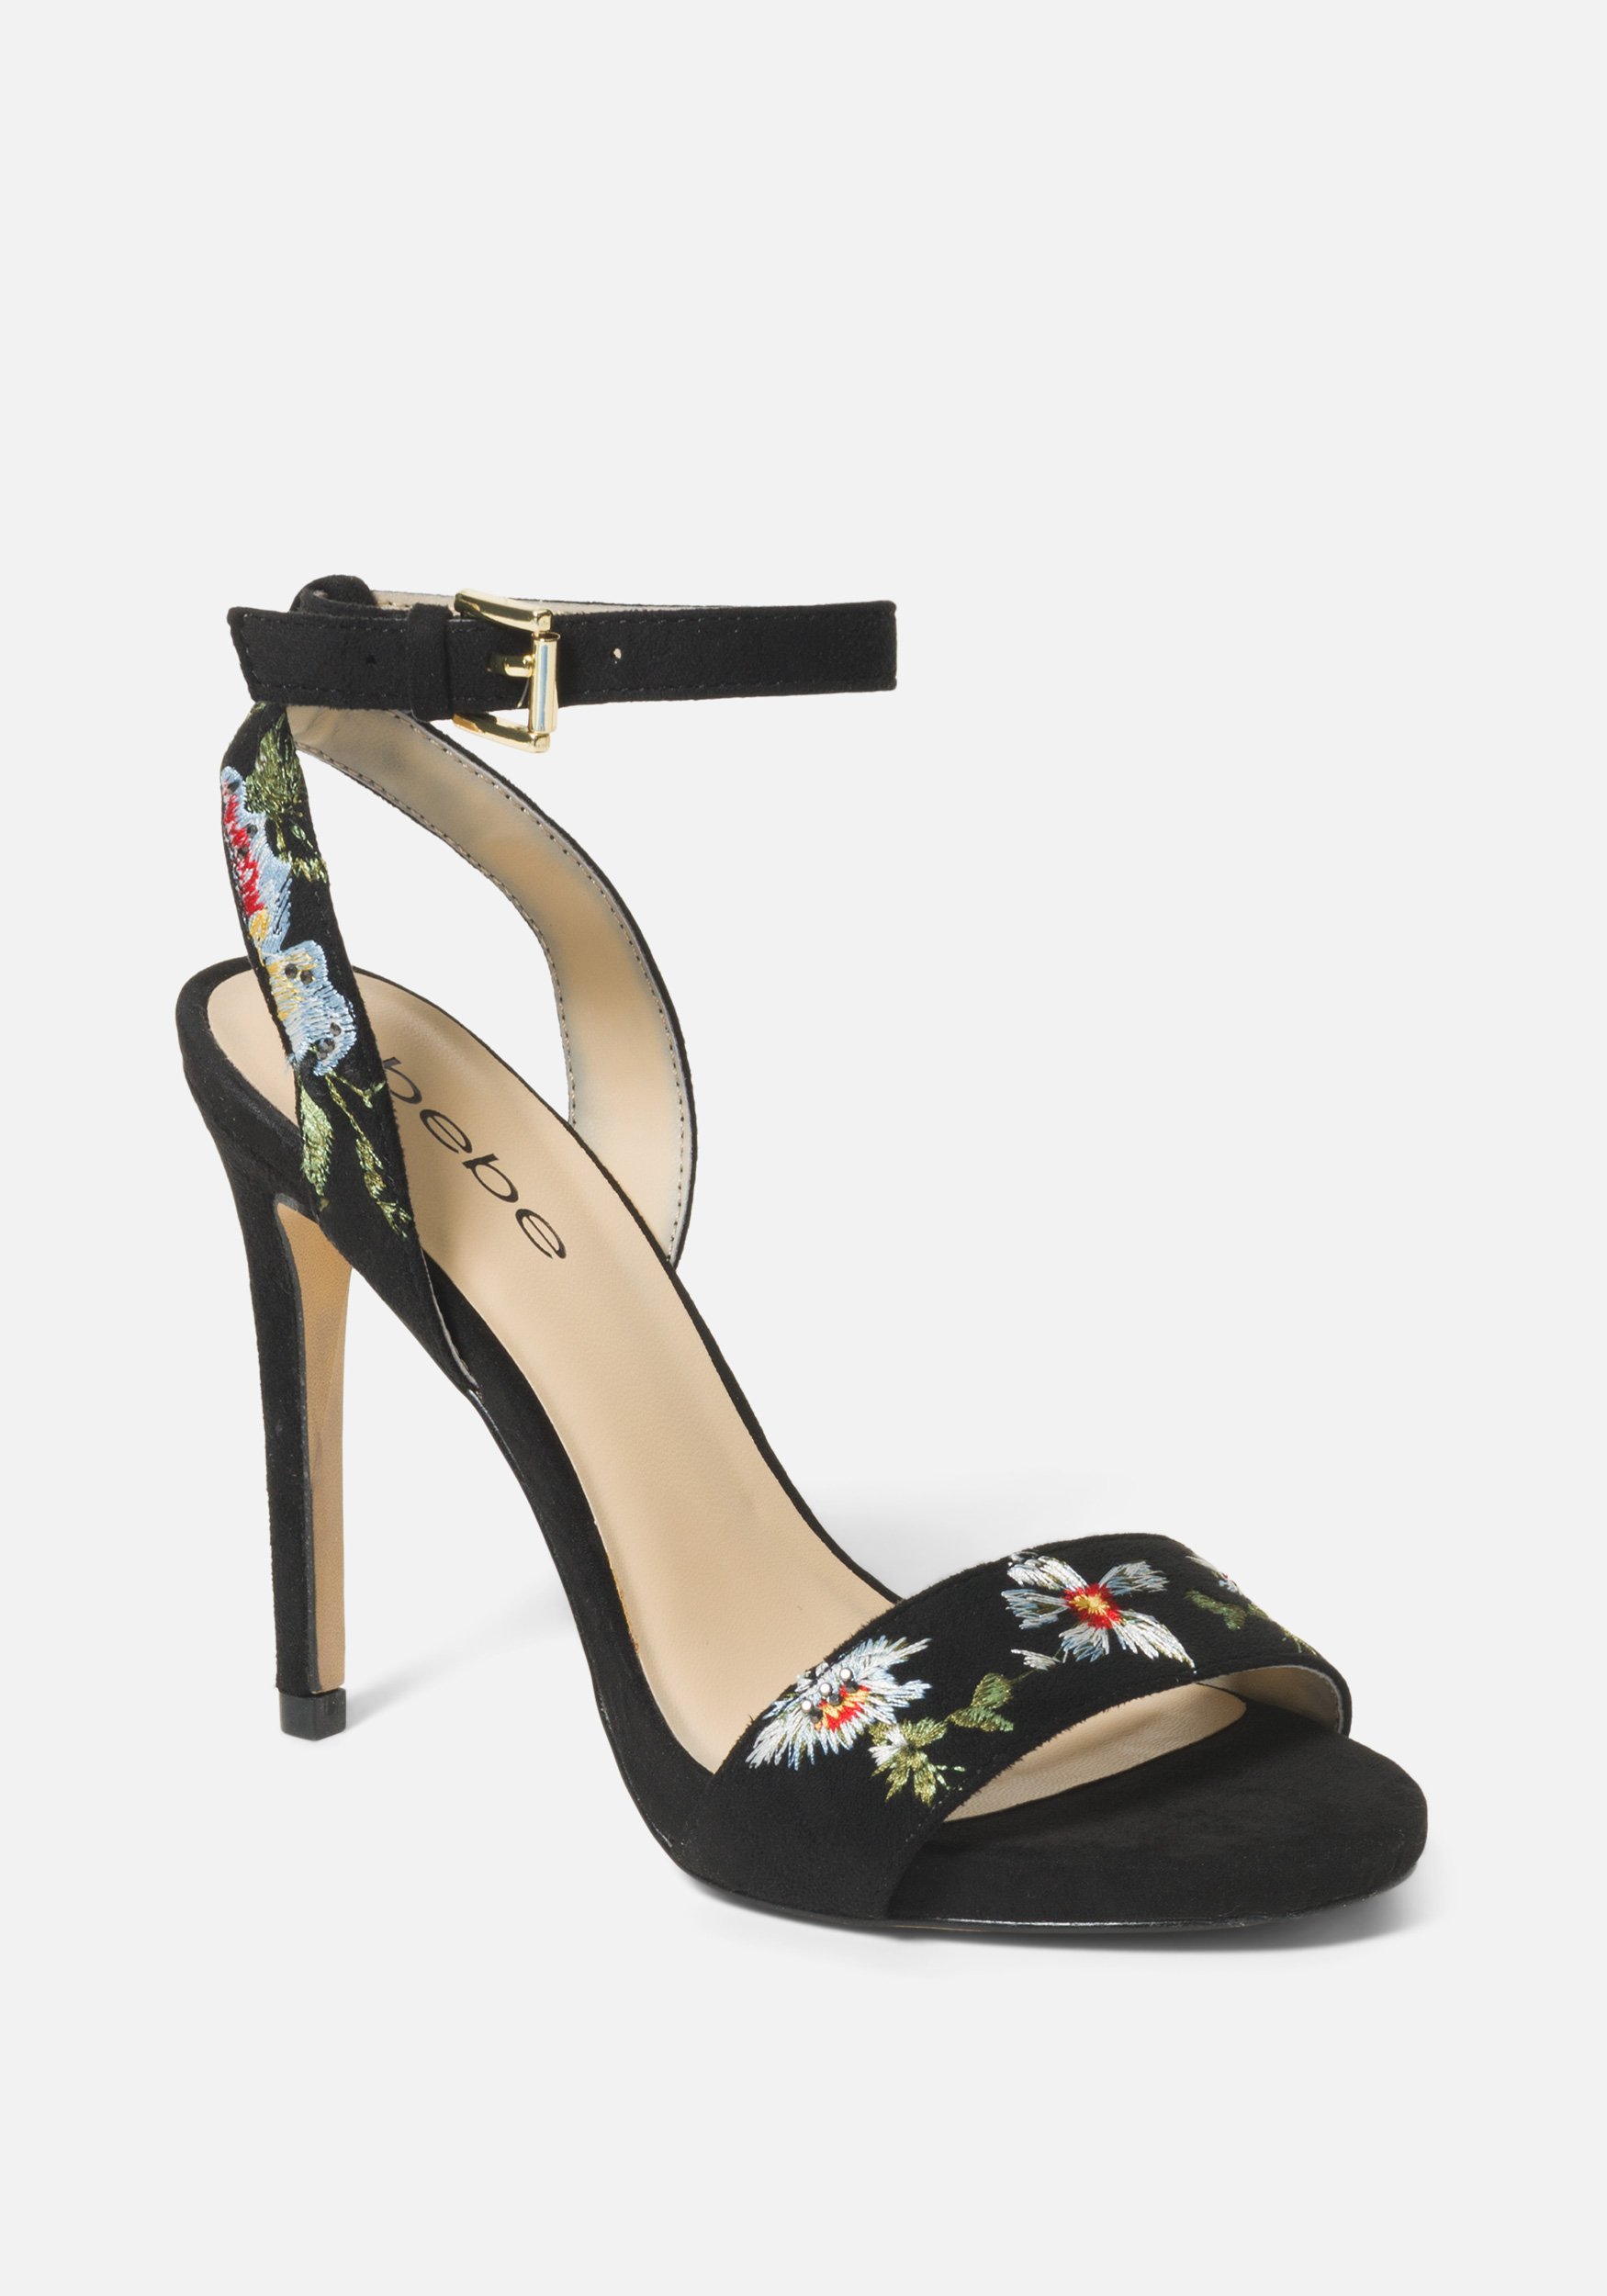 Bebe Women's Ingram Embroidery Heels Shoe, Size 10 in Black Synthetic